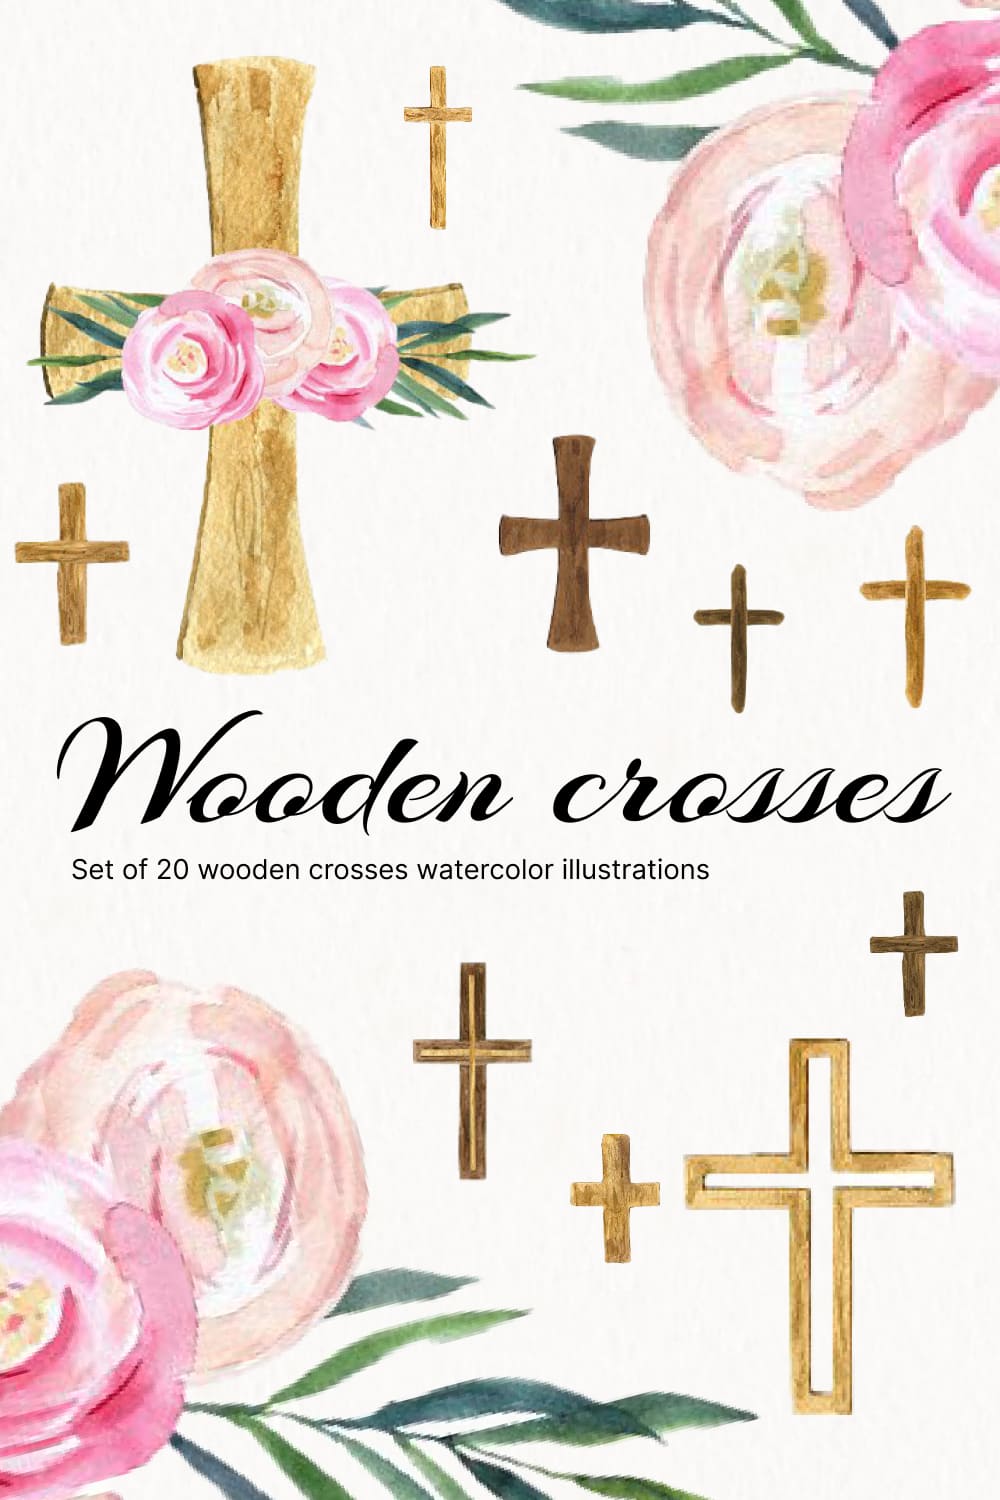 Watercolor wooden crosses.